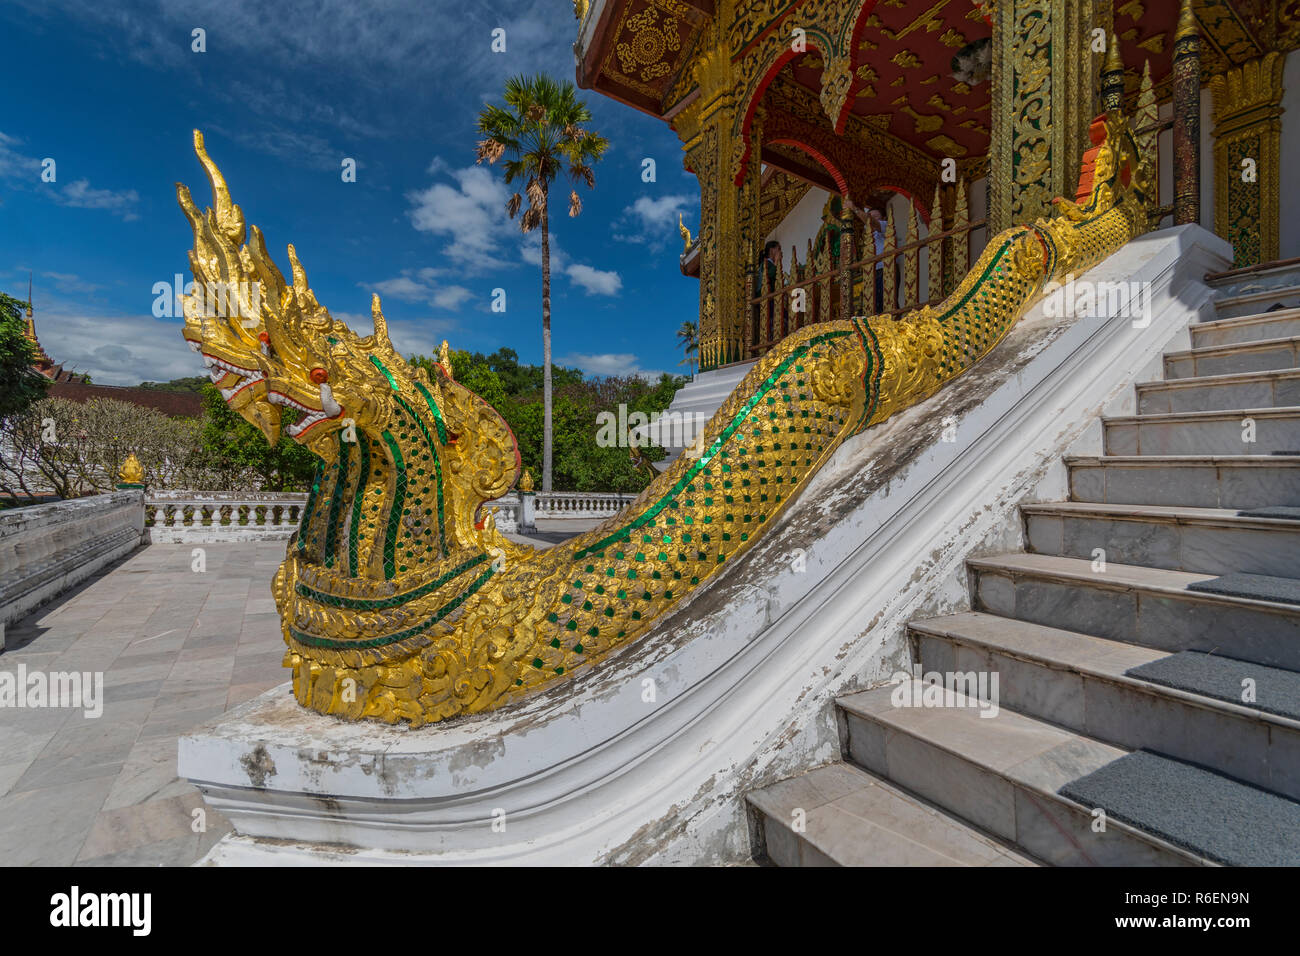 Golden Naga (King Cobras) Decorate Teh Stairs Of Haw Pha Bang (Or Palace Chapel) At The Royal Palace Museum In Luang Prabang, Laos Stock Photo